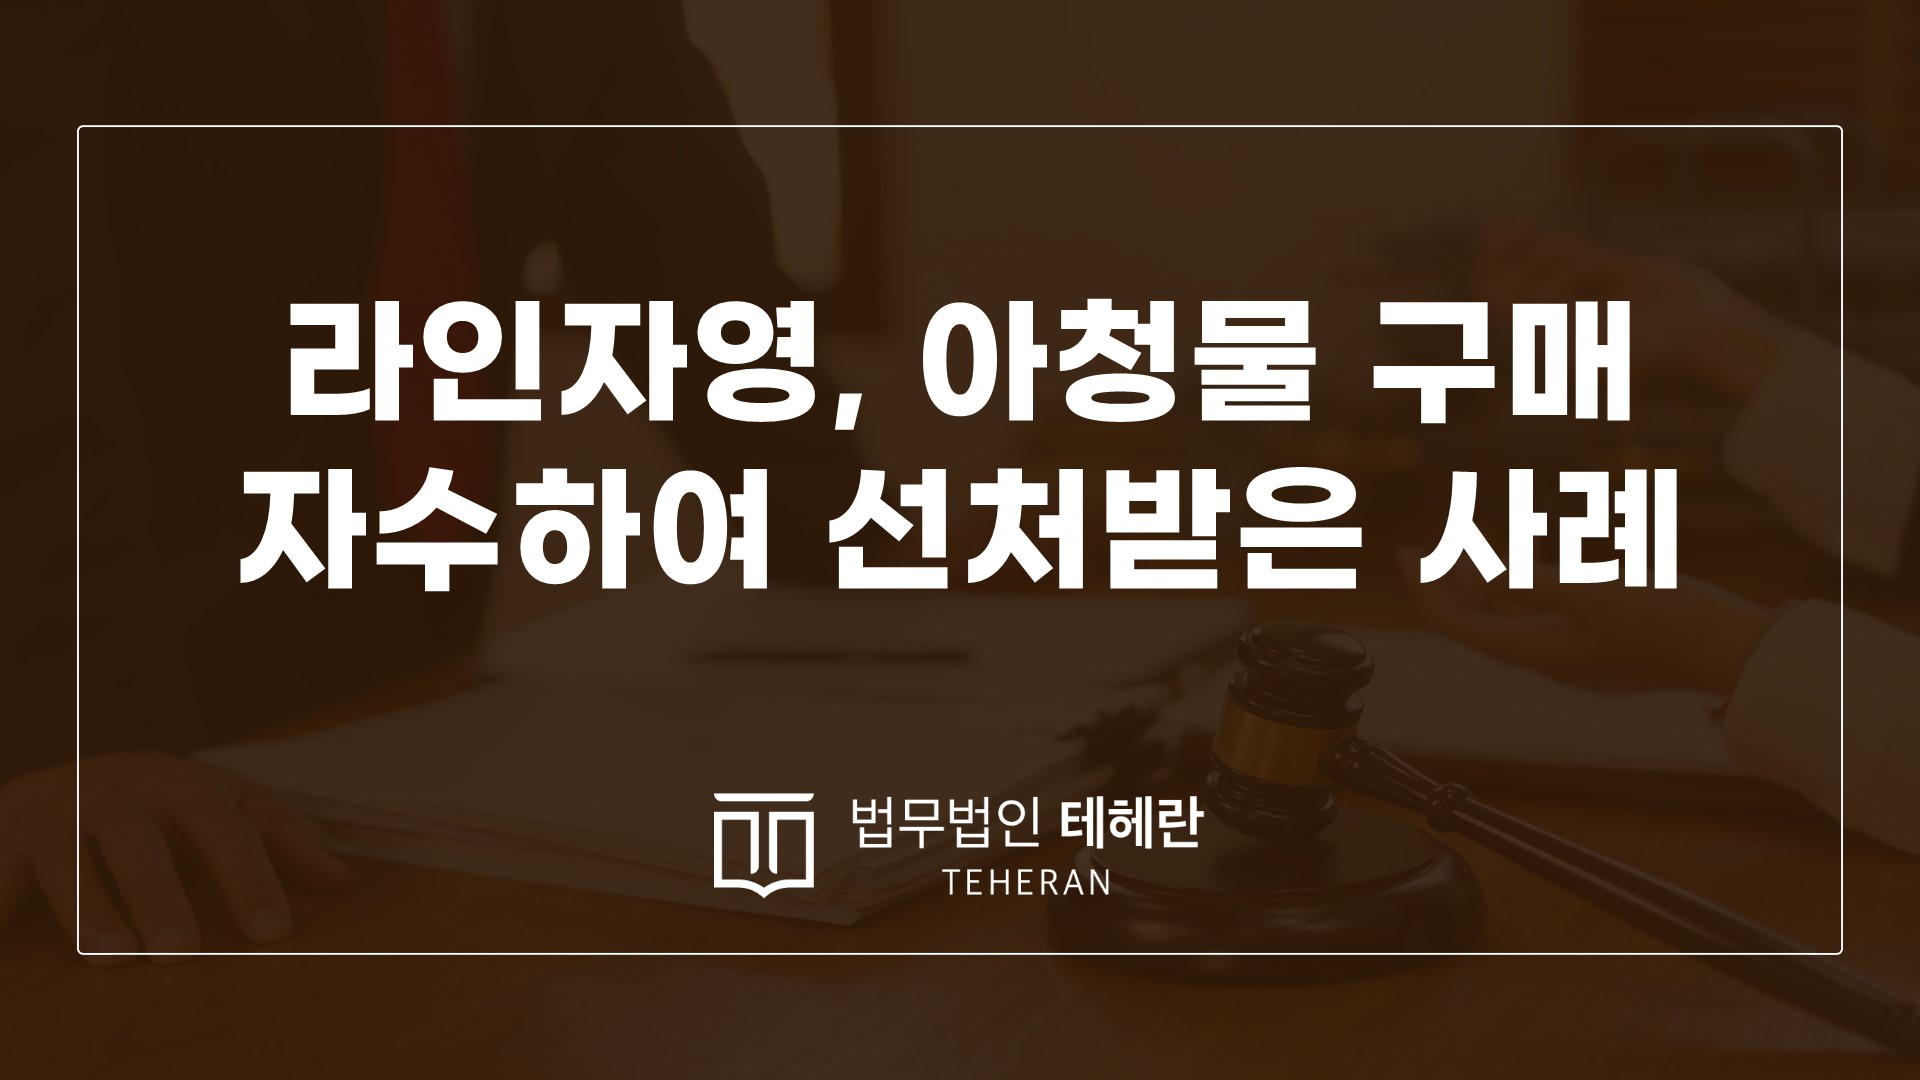 성범죄변호사 성범죄전문변호사 라인자영 자영구매 아청물소지 아청물구매